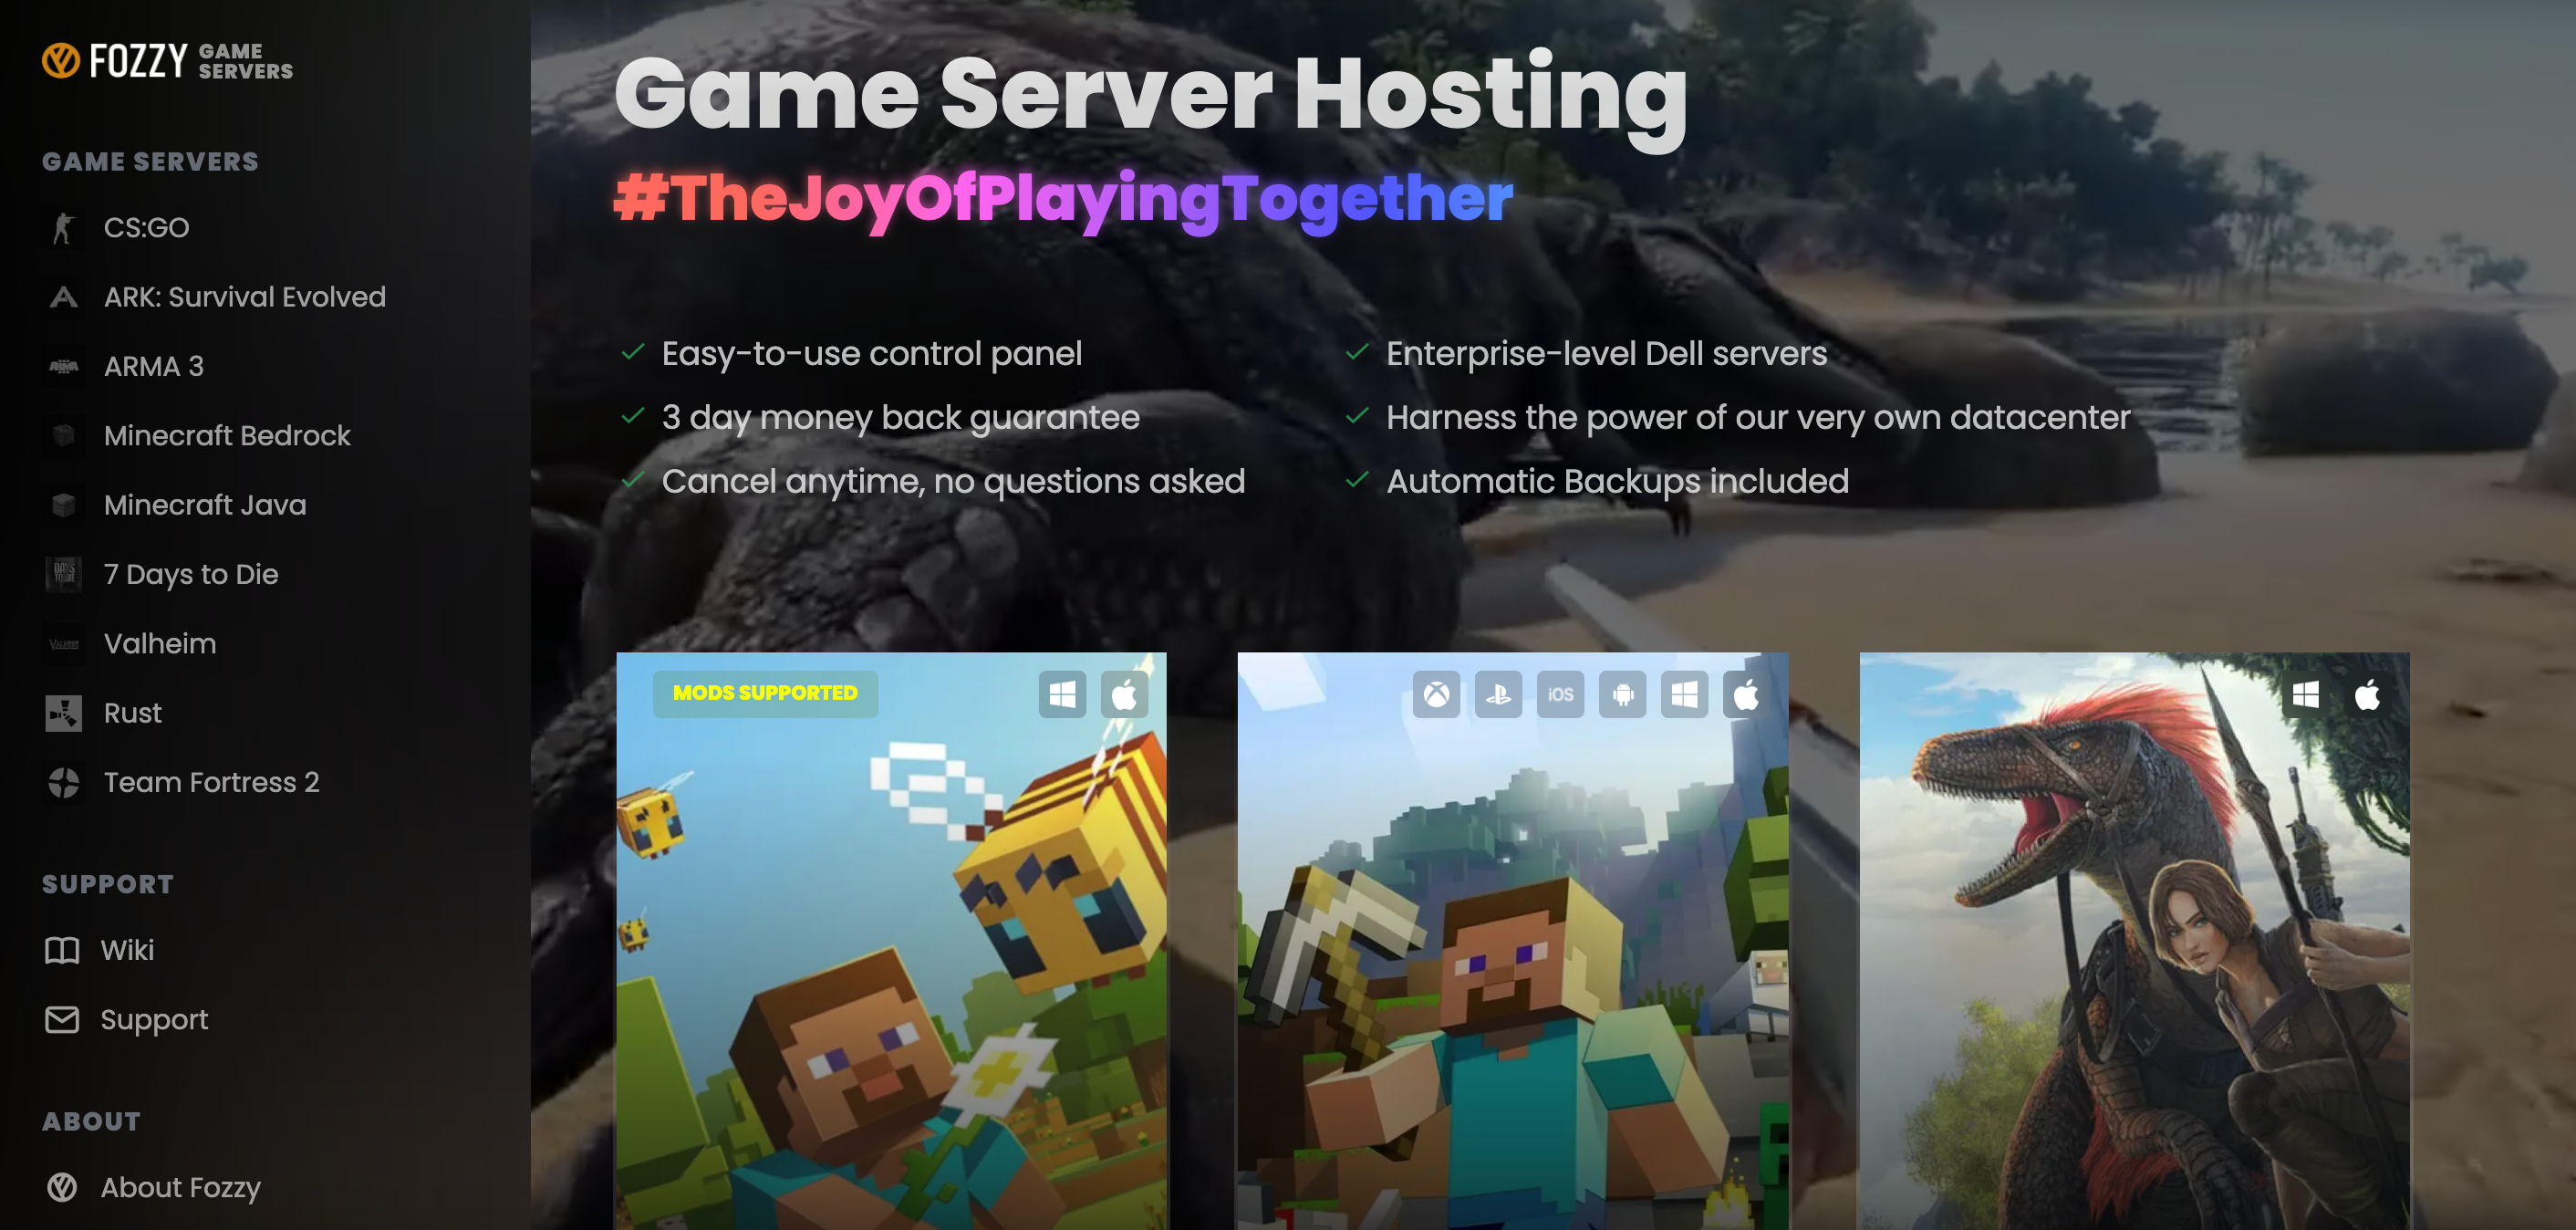 Garry's Mod Server Hosting - Game Host Bros